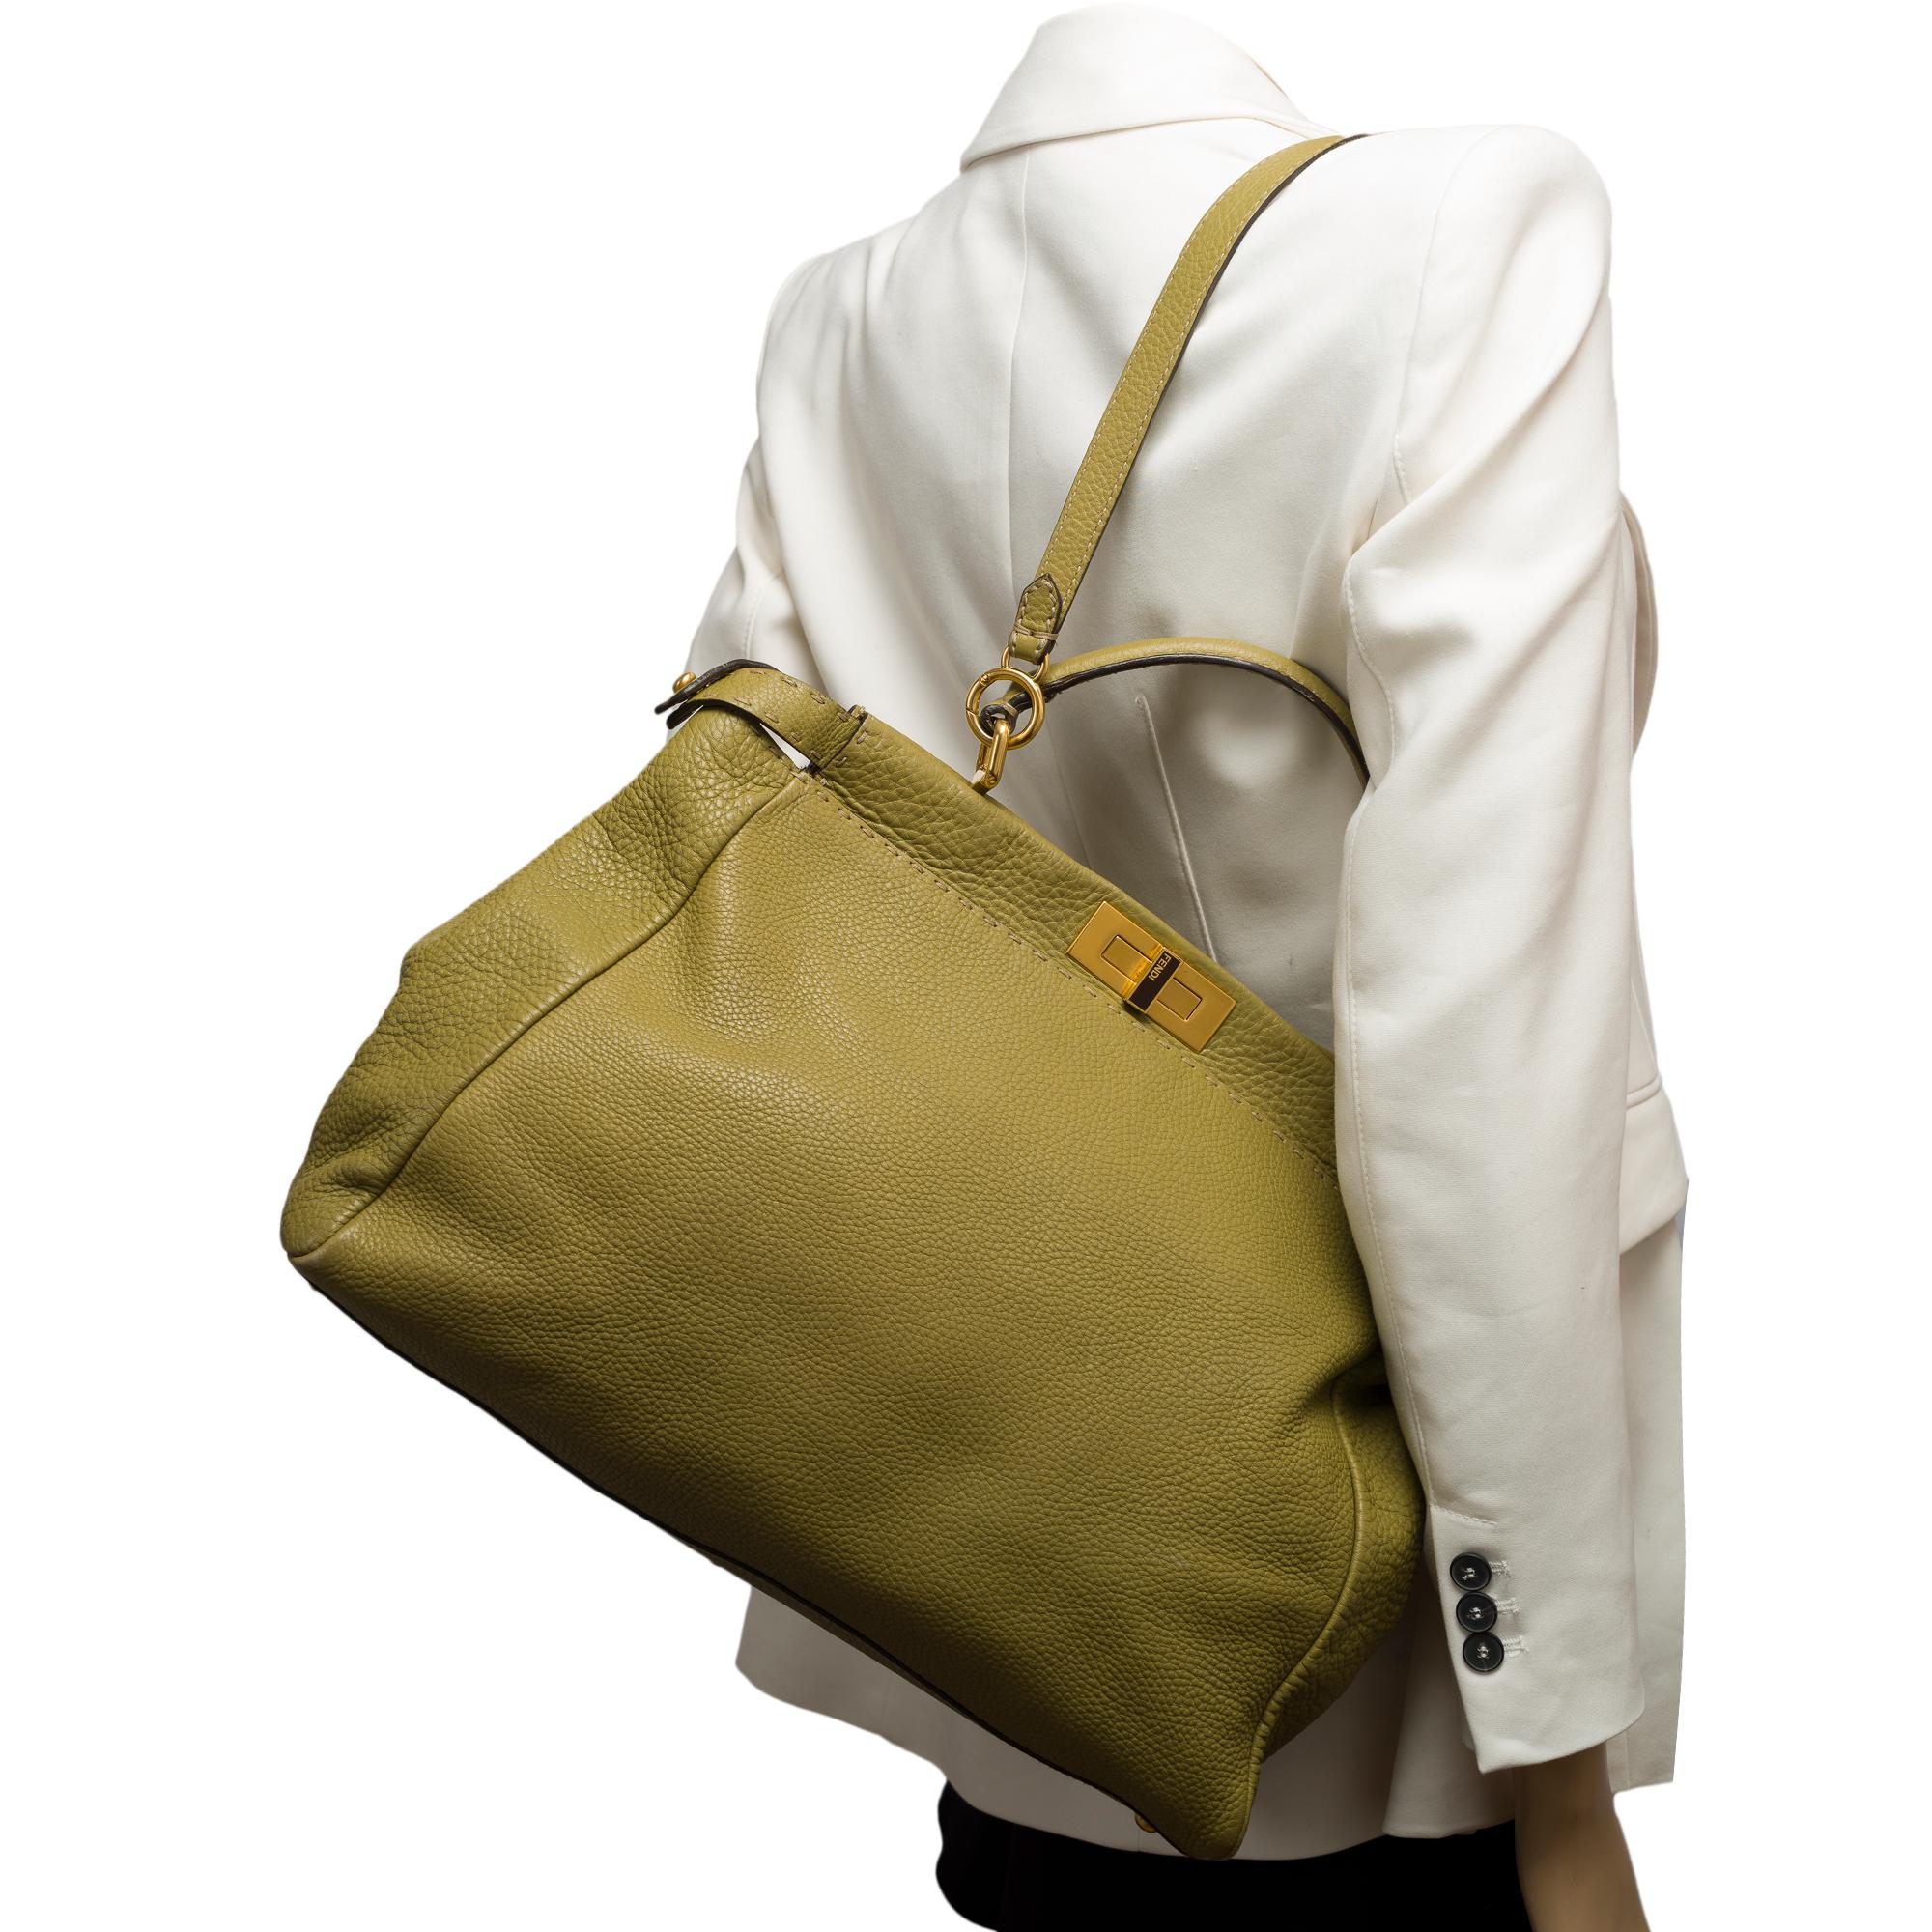 Fendi Grand Modele Peekaboo handbag strap in Olive Green calf leather, GHW For Sale 9